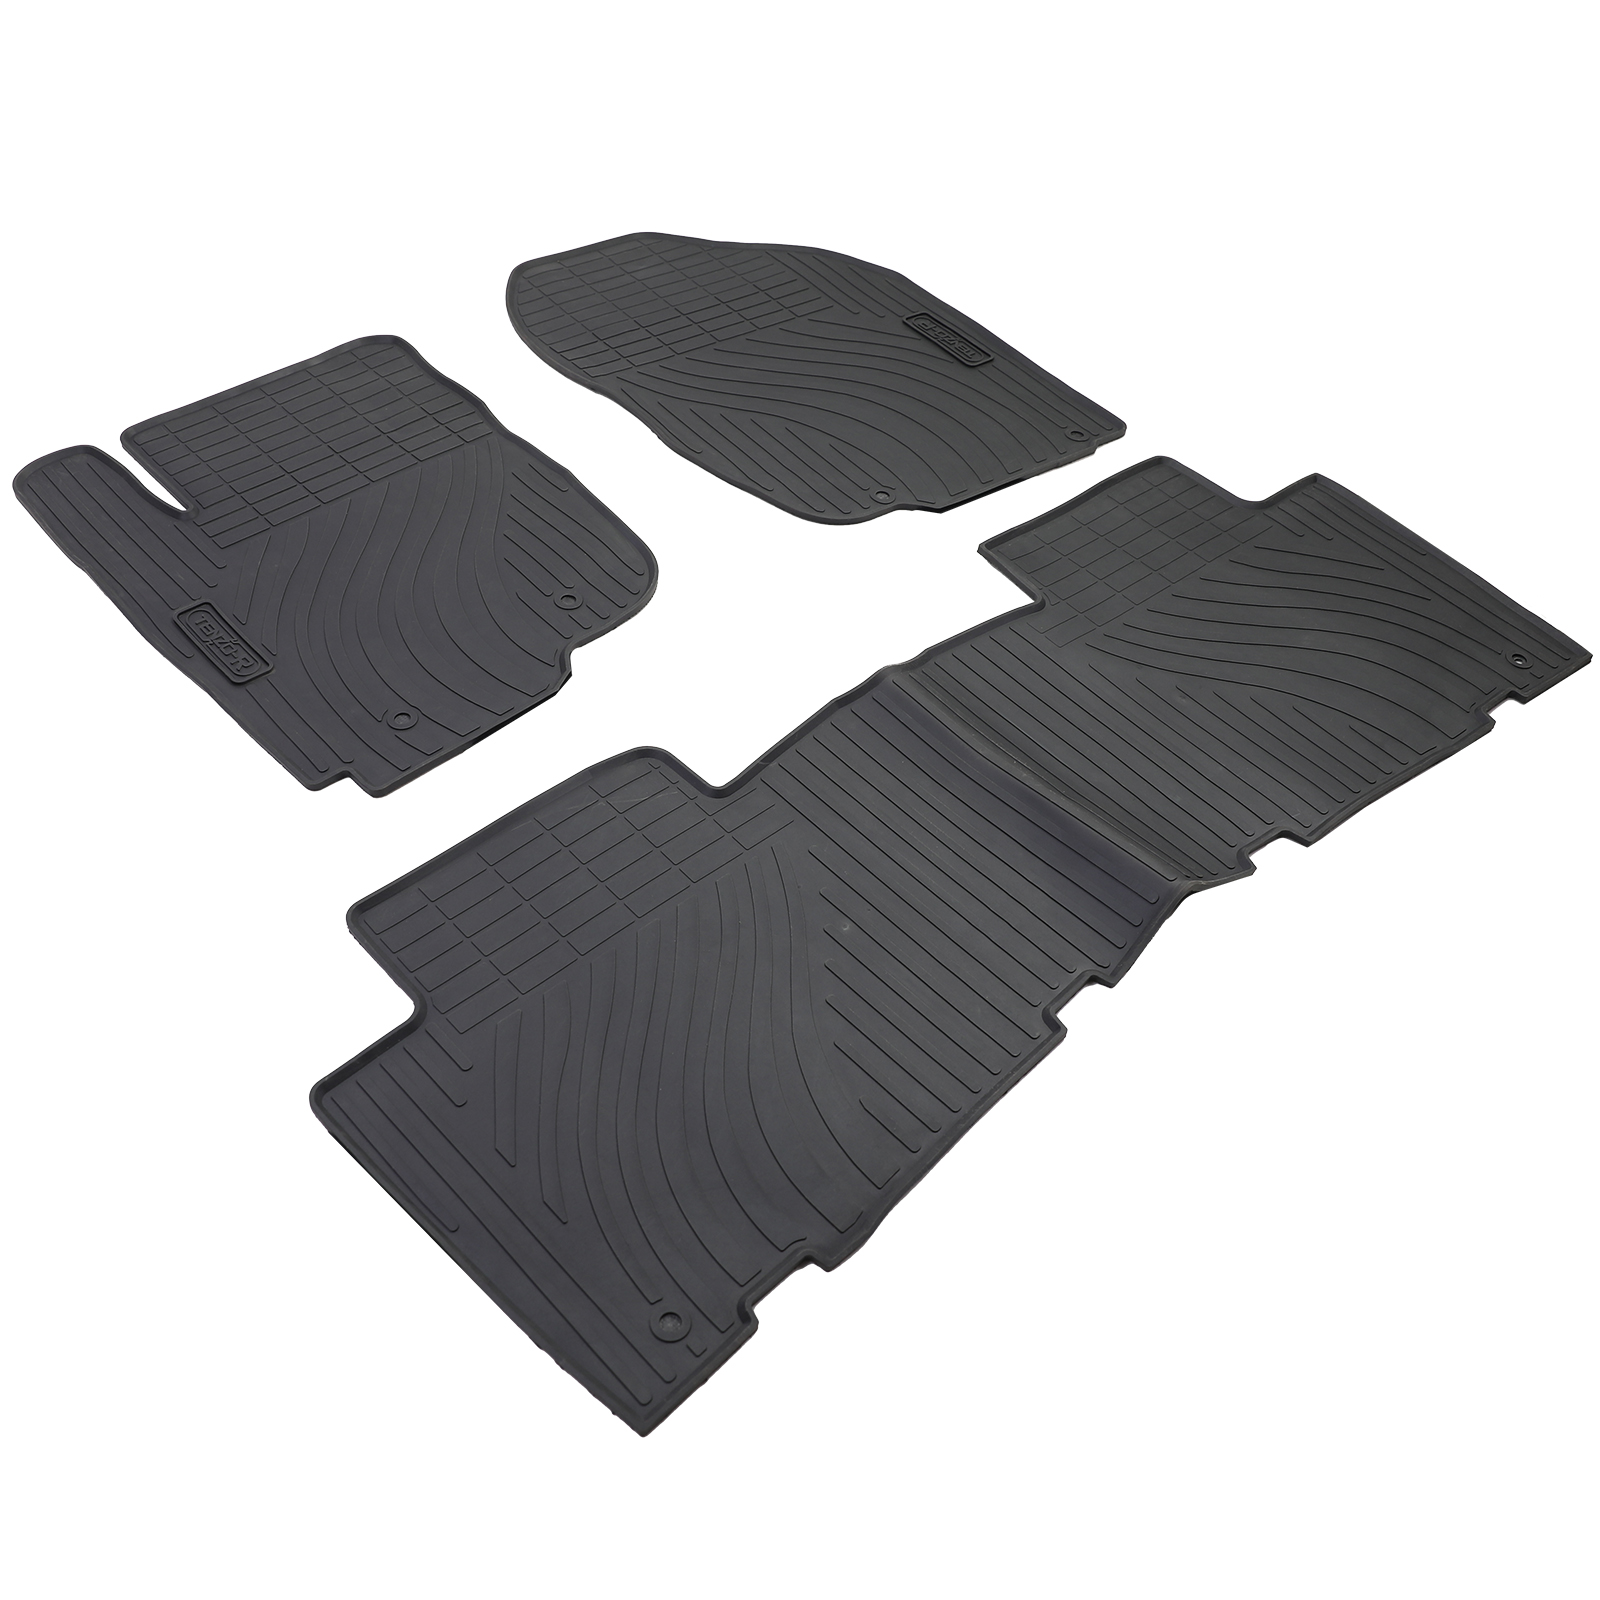 Auto Gummi Fußmatten Schwarz Premium Set für Toyota RAV4 A3 05-13 kaufen